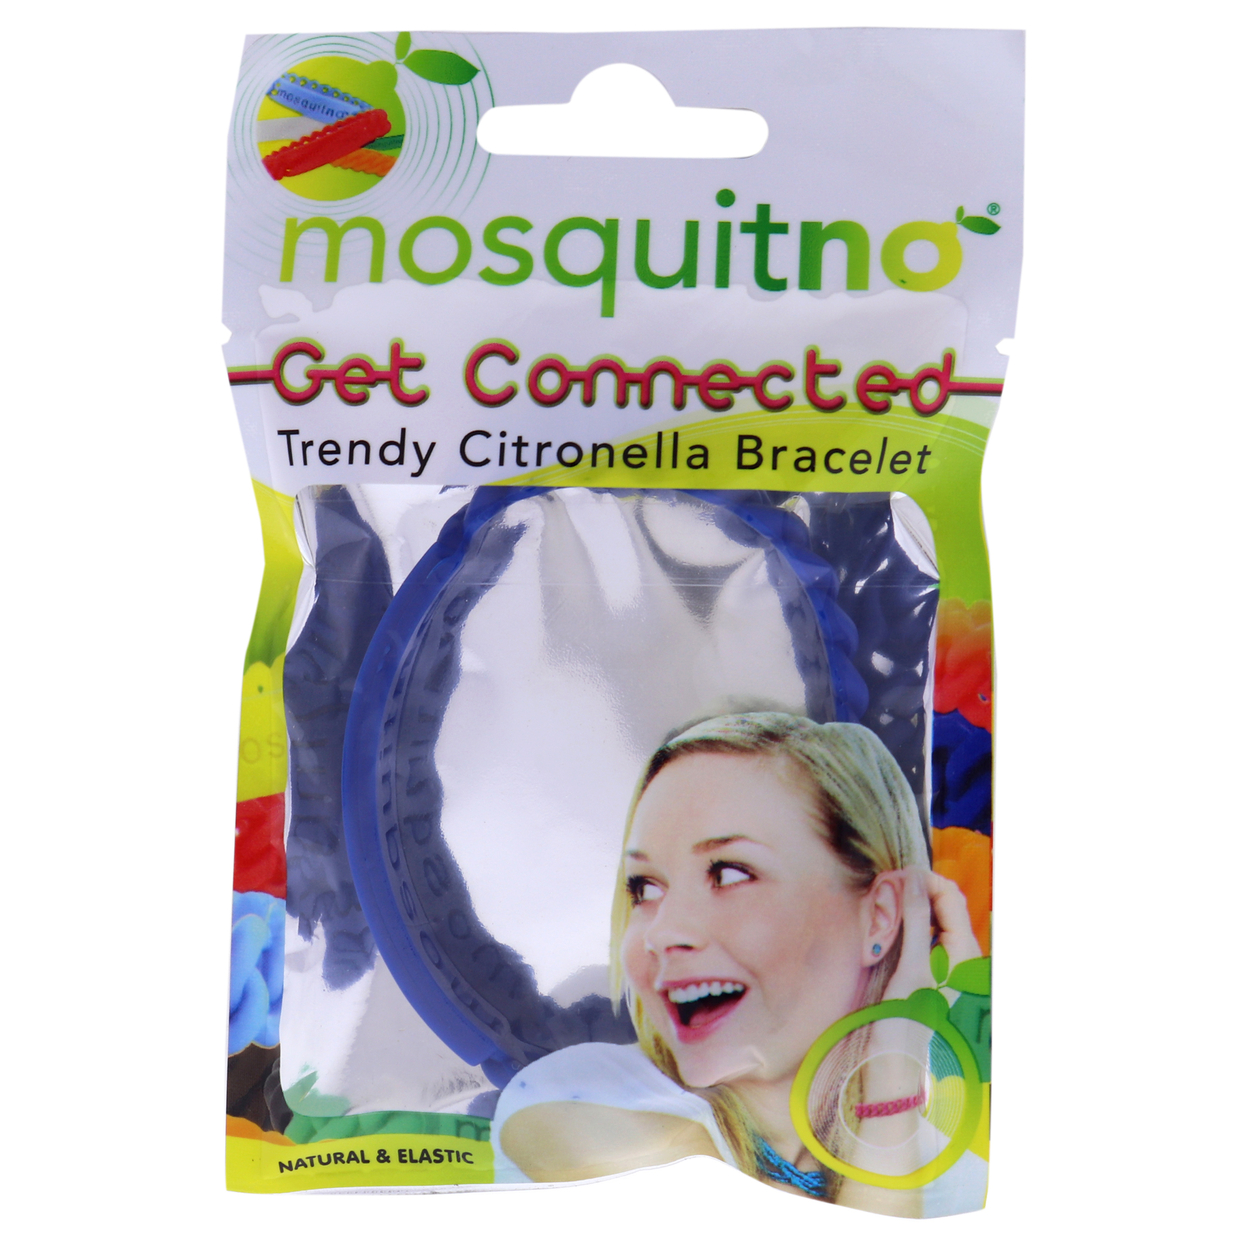 Mosquitno Get Connected Citronella Bracelet - Blue 1 Pc